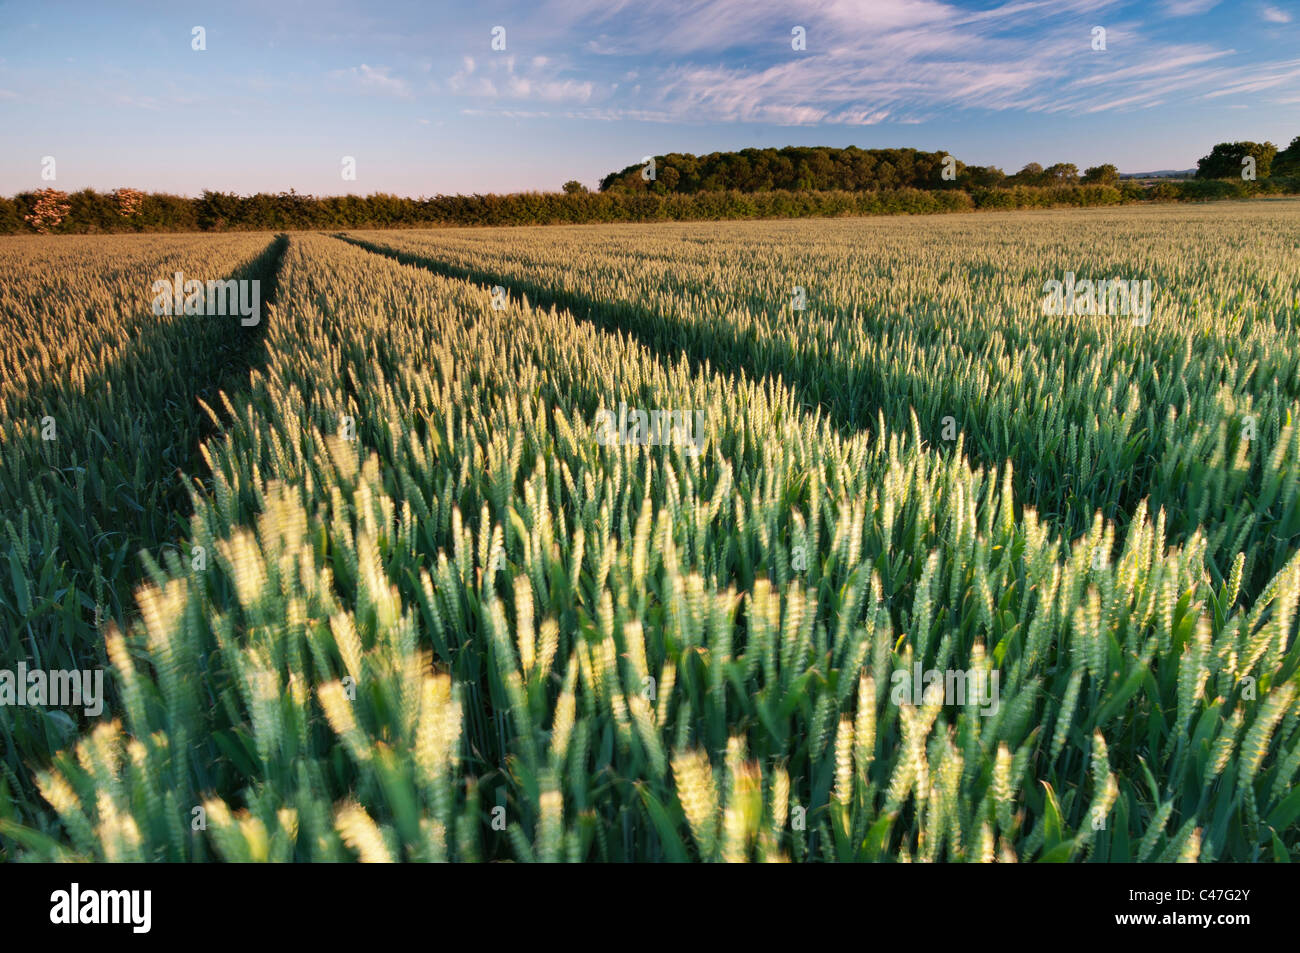 Wheat crop growing in a field near Wysall, Nottinghamshire, June 2011. Stock Photo